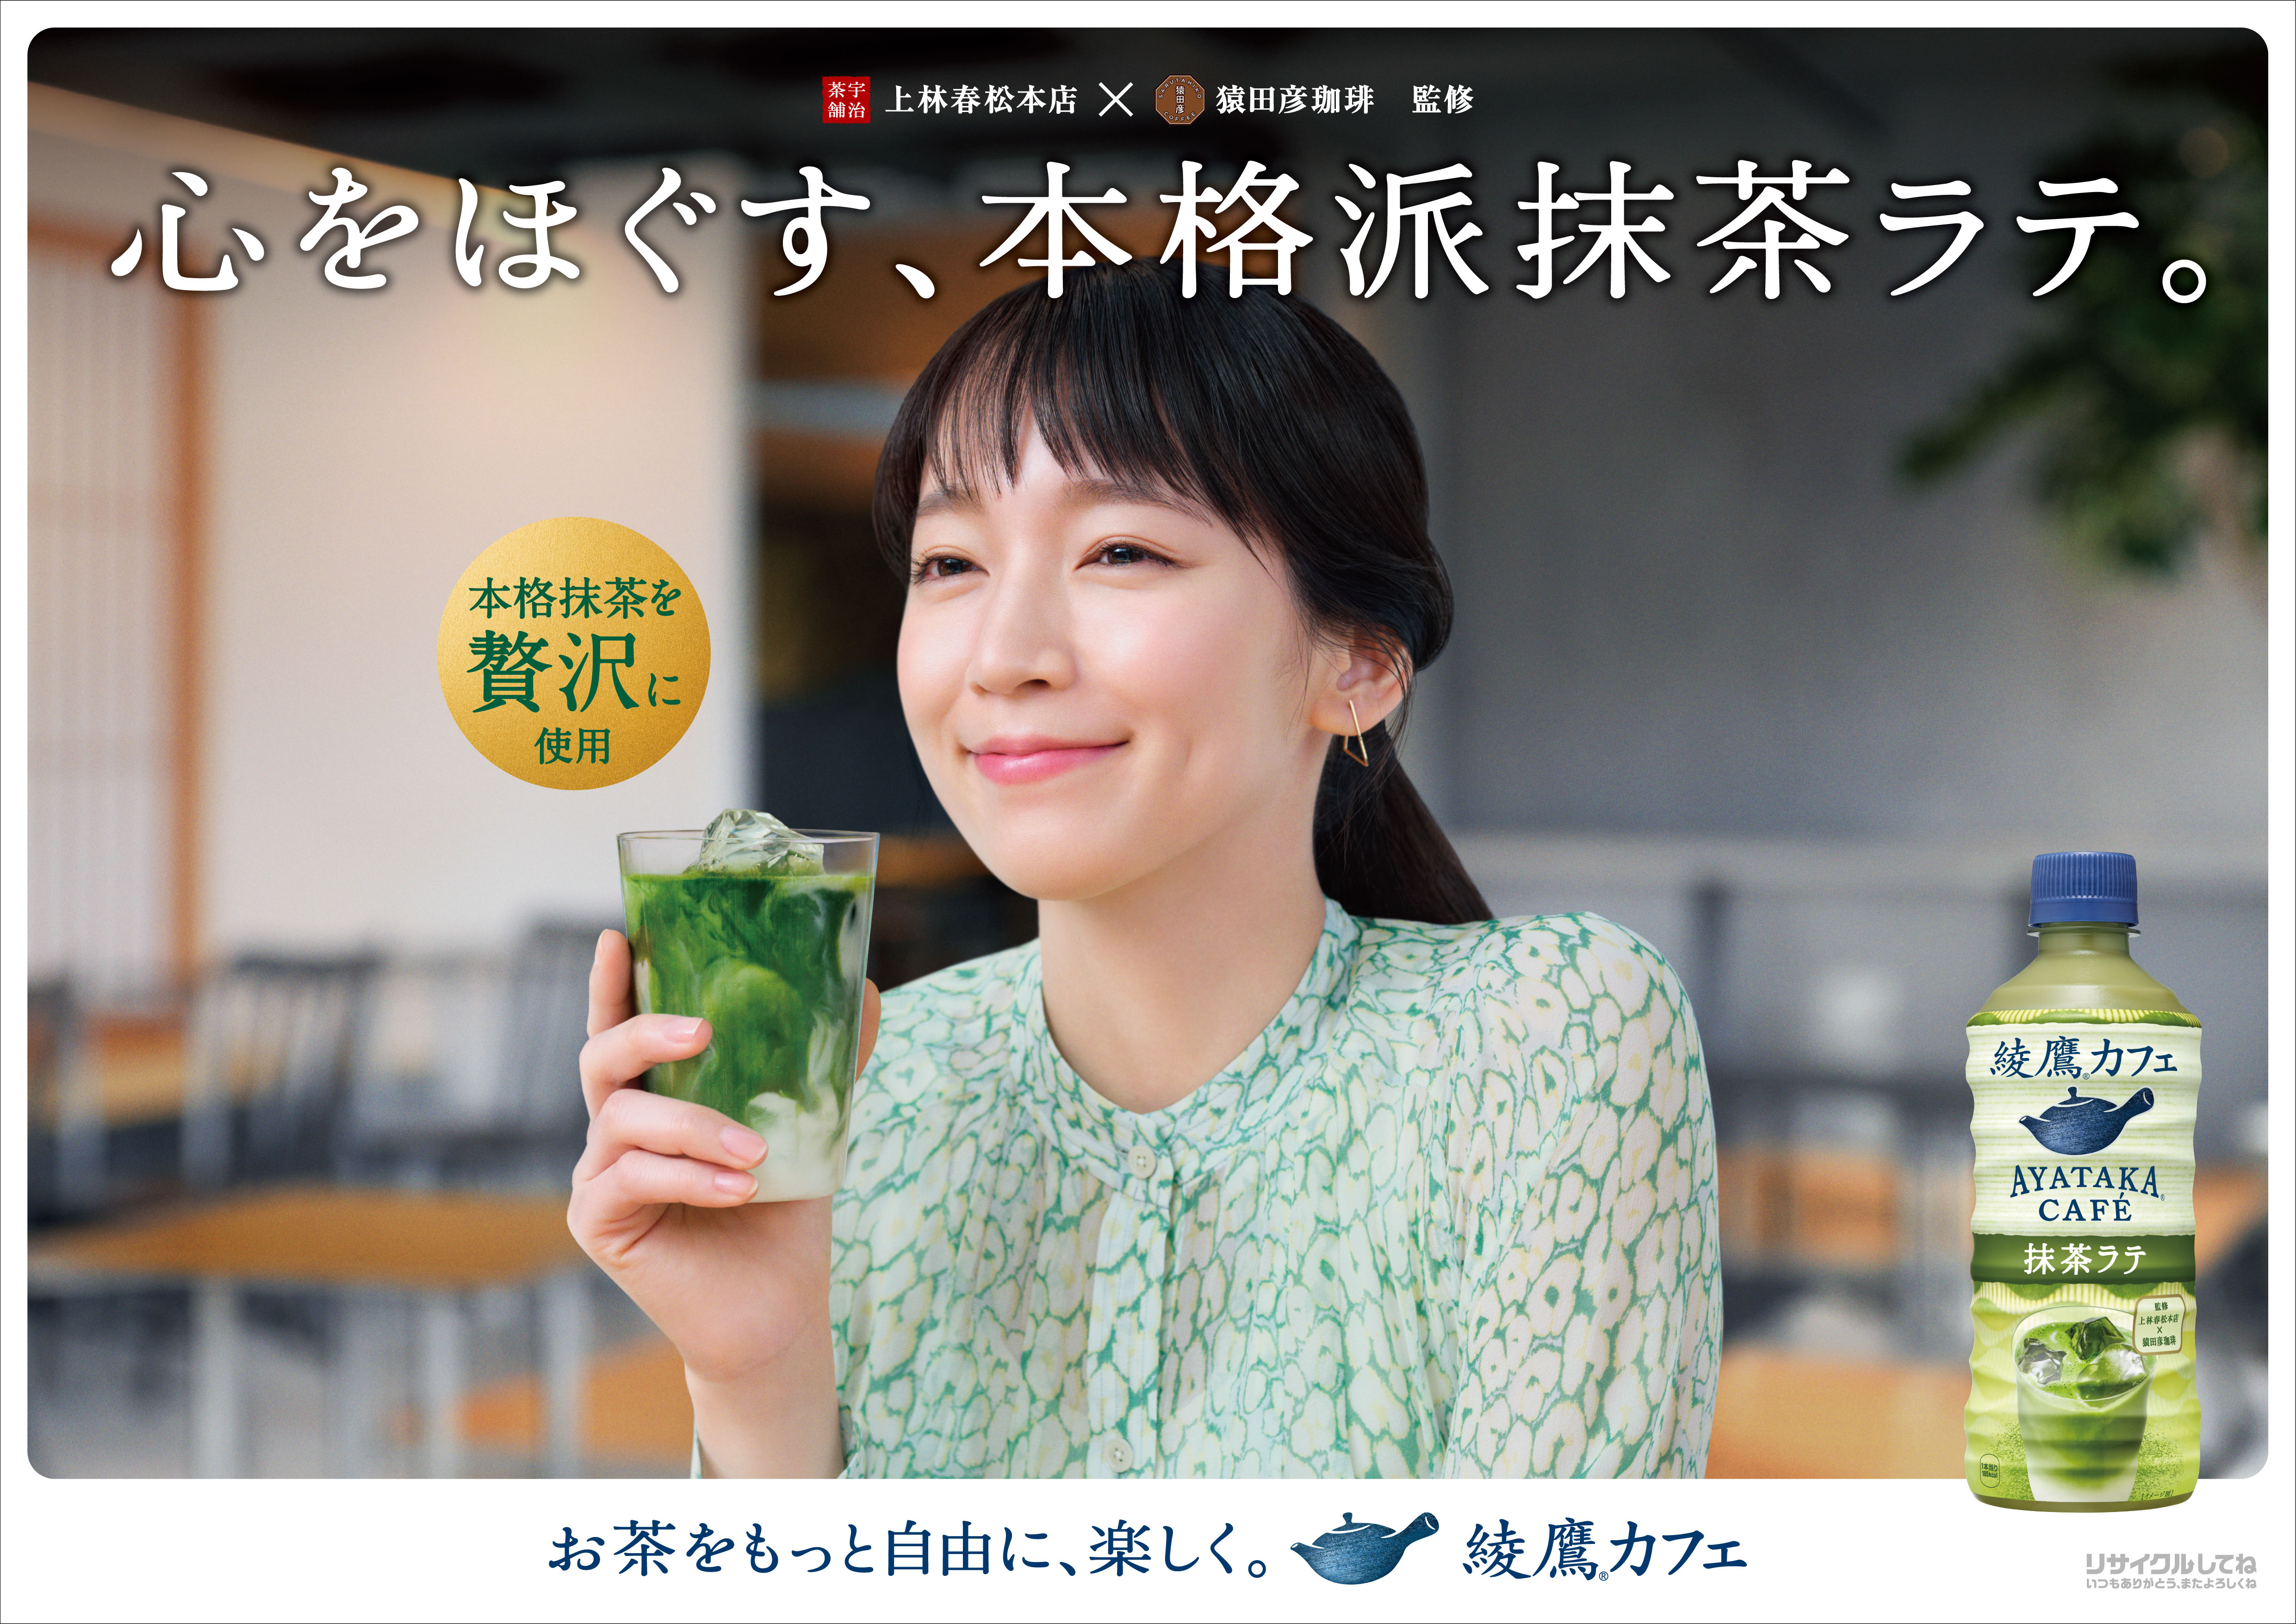 綾鷹カフェ 抹茶ラテ 好調 販売再開から17日で2 500万本突破 販売再開の初週には1秒に28本という驚異のペースを記録 日本コカ コーラ株式会社のプレスリリース